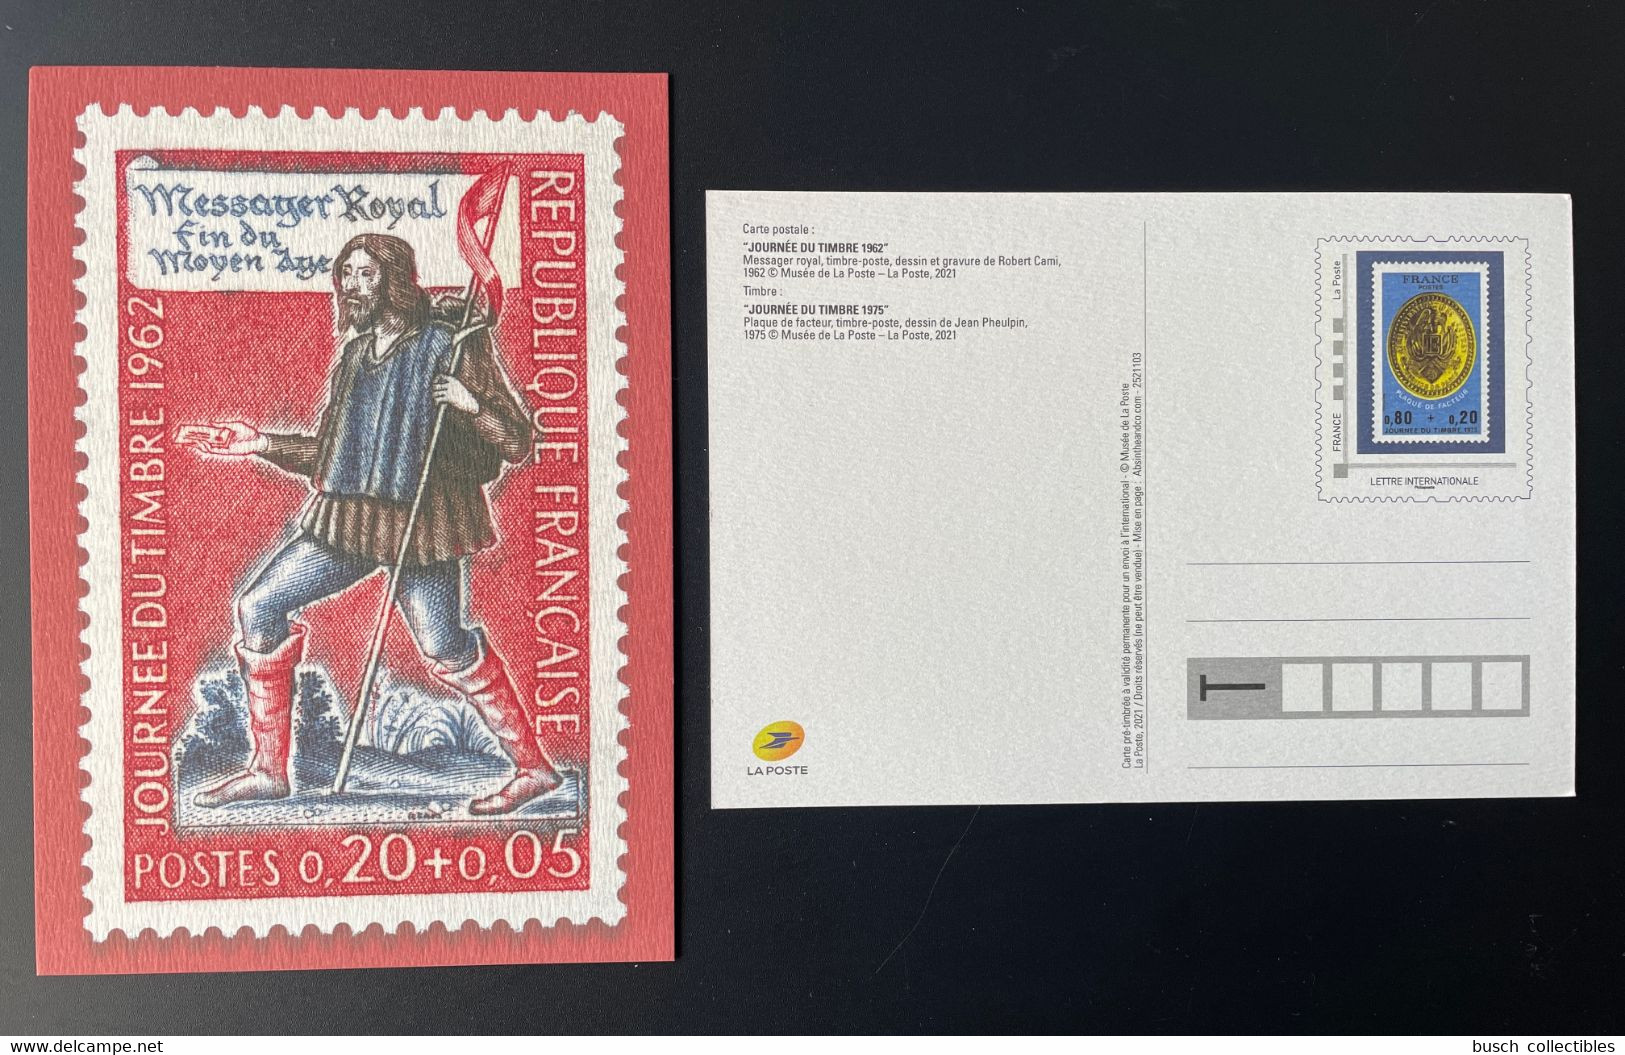 France 2021 - Carte Postale Entier Journée Du Timbre 1962 Messager Royal Fin Du Moyen Âge - Sonderganzsachen